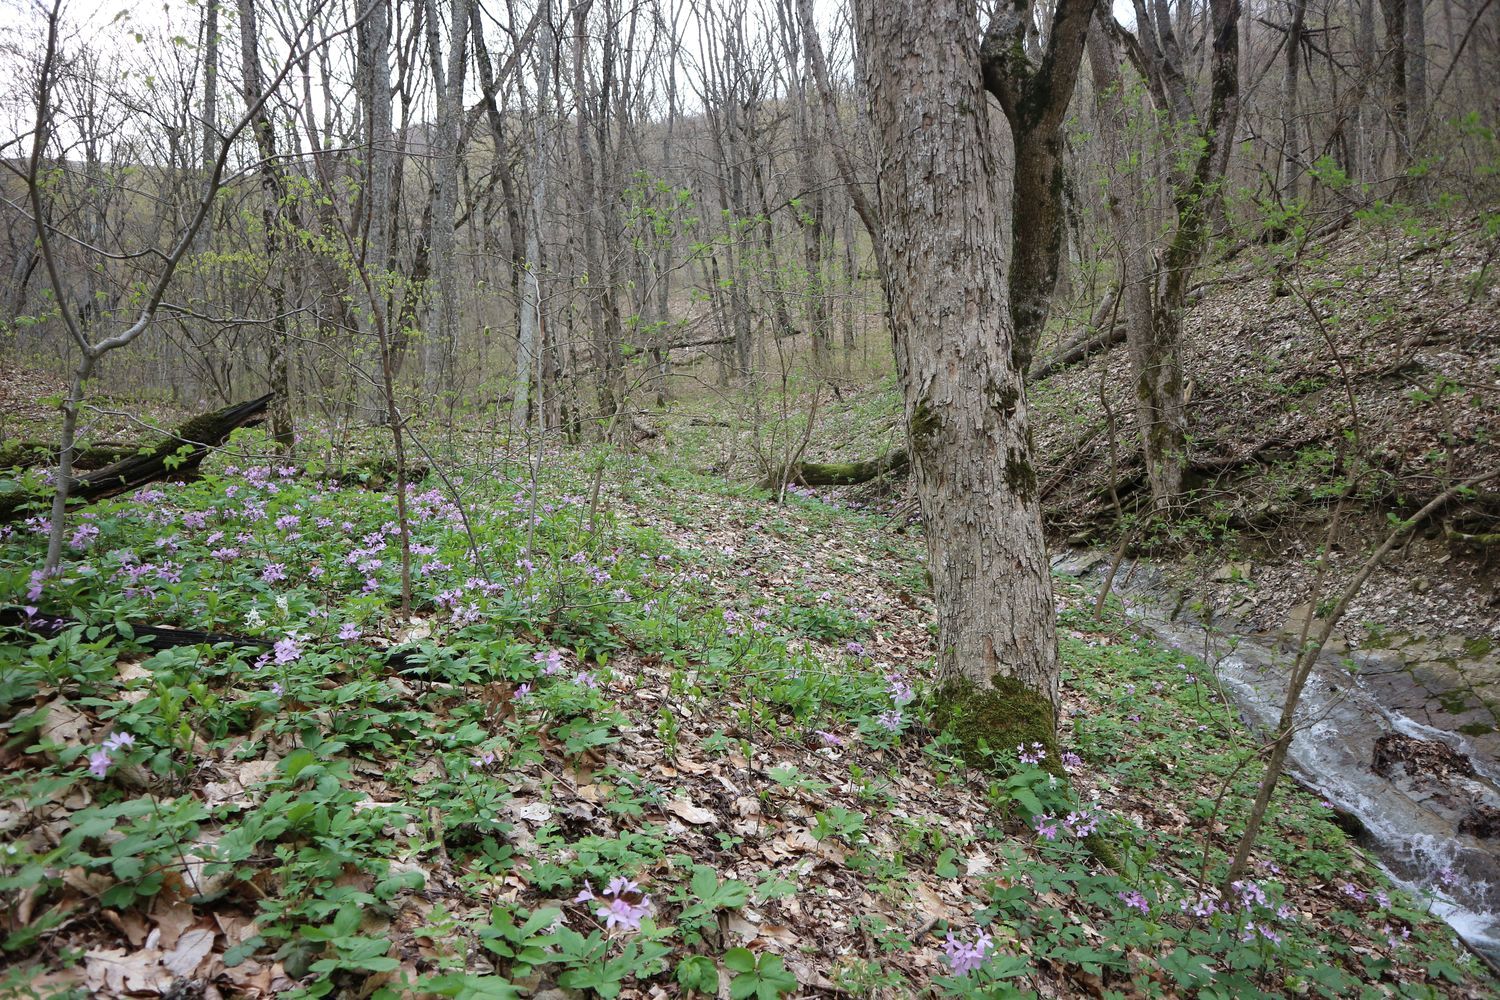 Щель Полихронова, image of landscape/habitat.